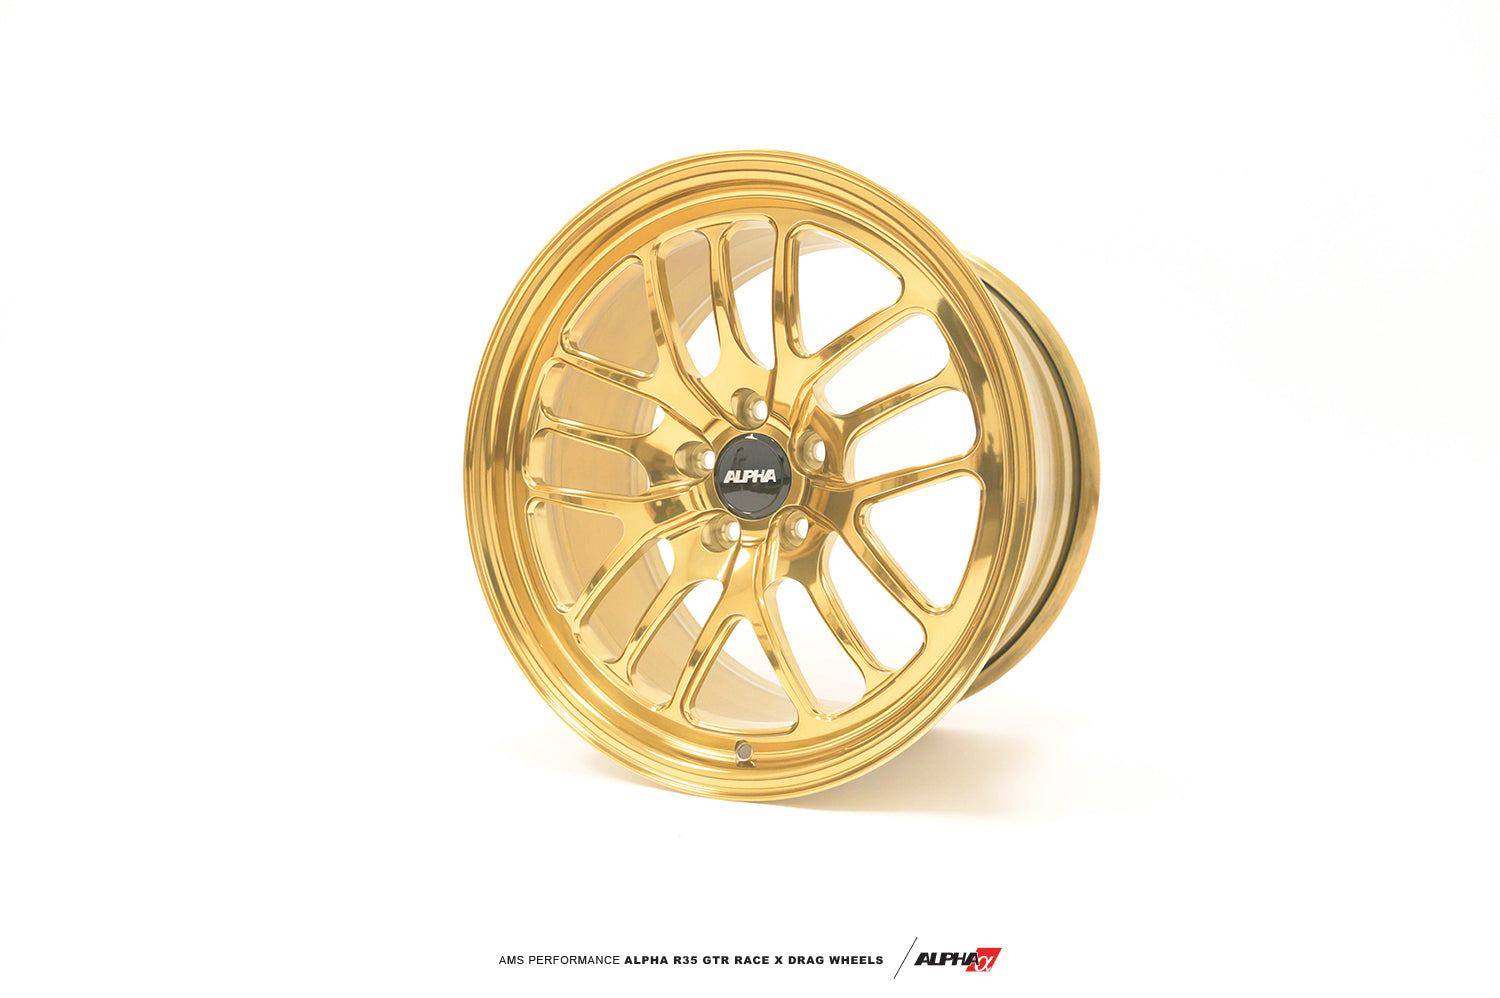 ALPHA Performance Race X 18X11" 2-Piece Rear Drag Wheel (Each)